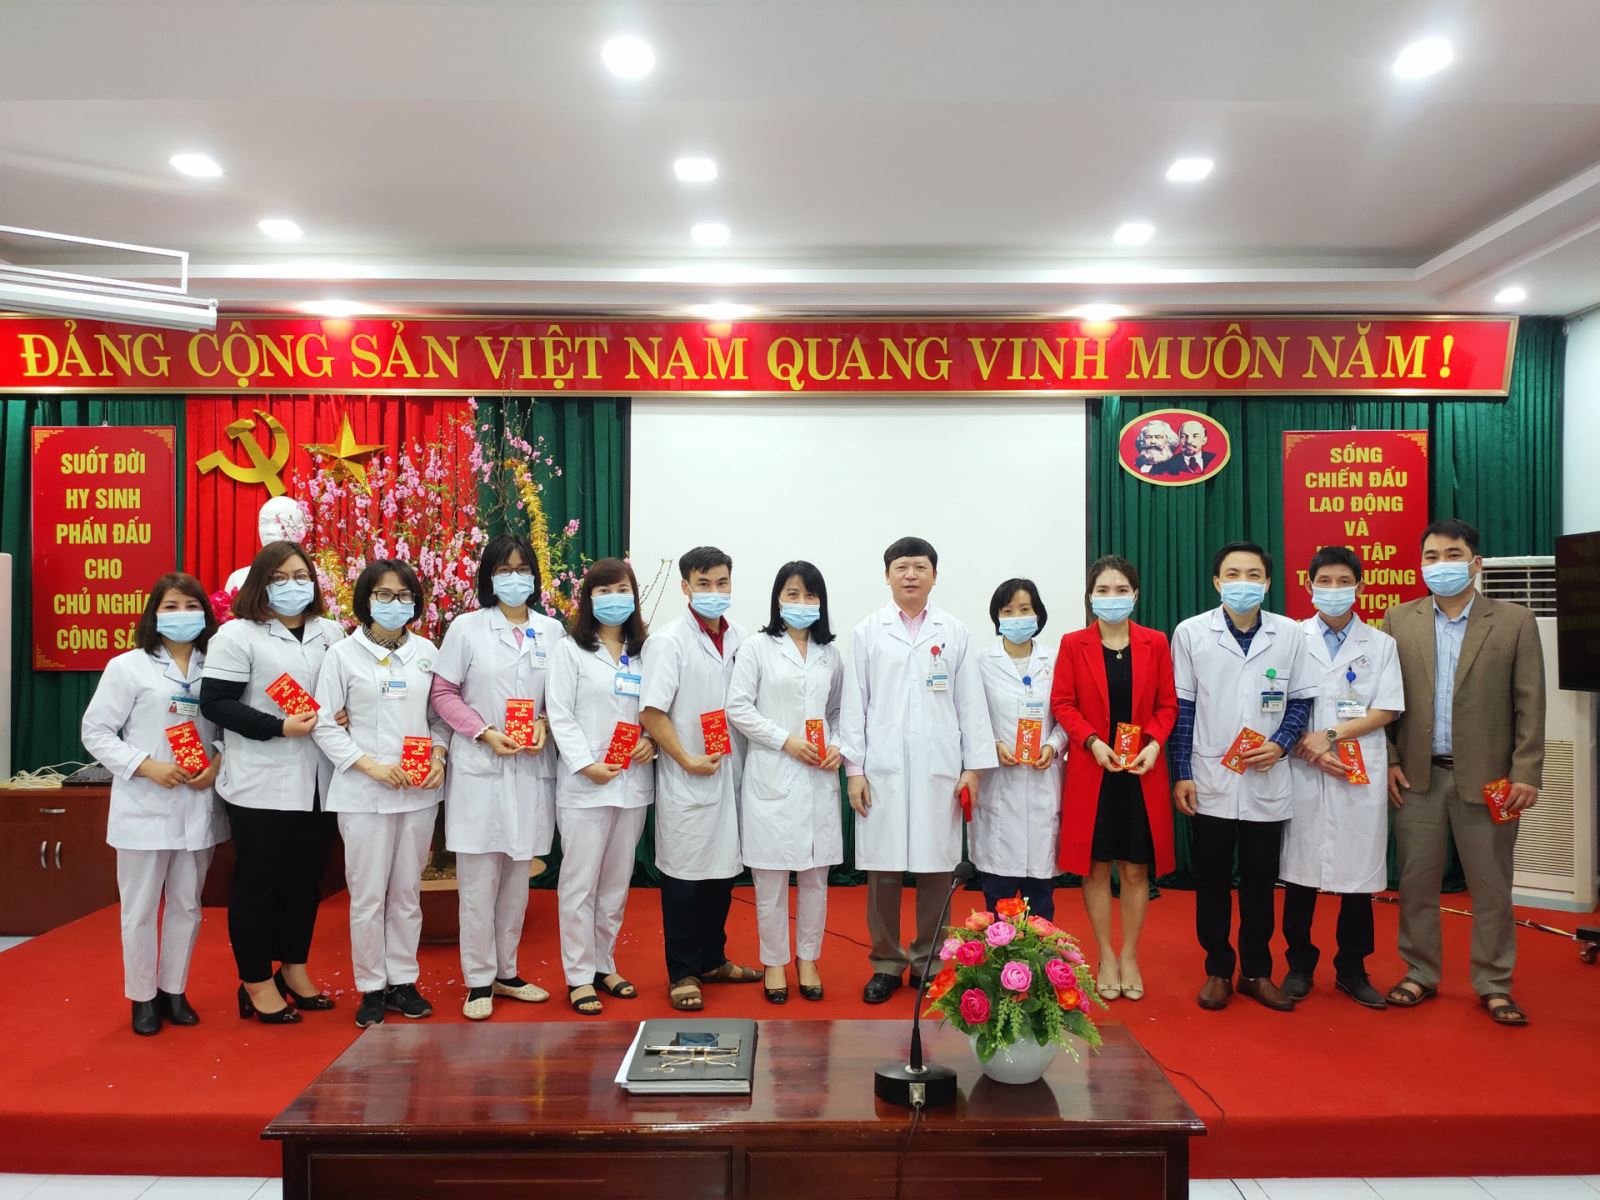 Đ/c Phạm Quang Thanh – Bí thư Đảng ủy, Giám đốc Bệnh viện đã trao tặng lì xì mừng năm mới cho các cán bộ chủ chốt.